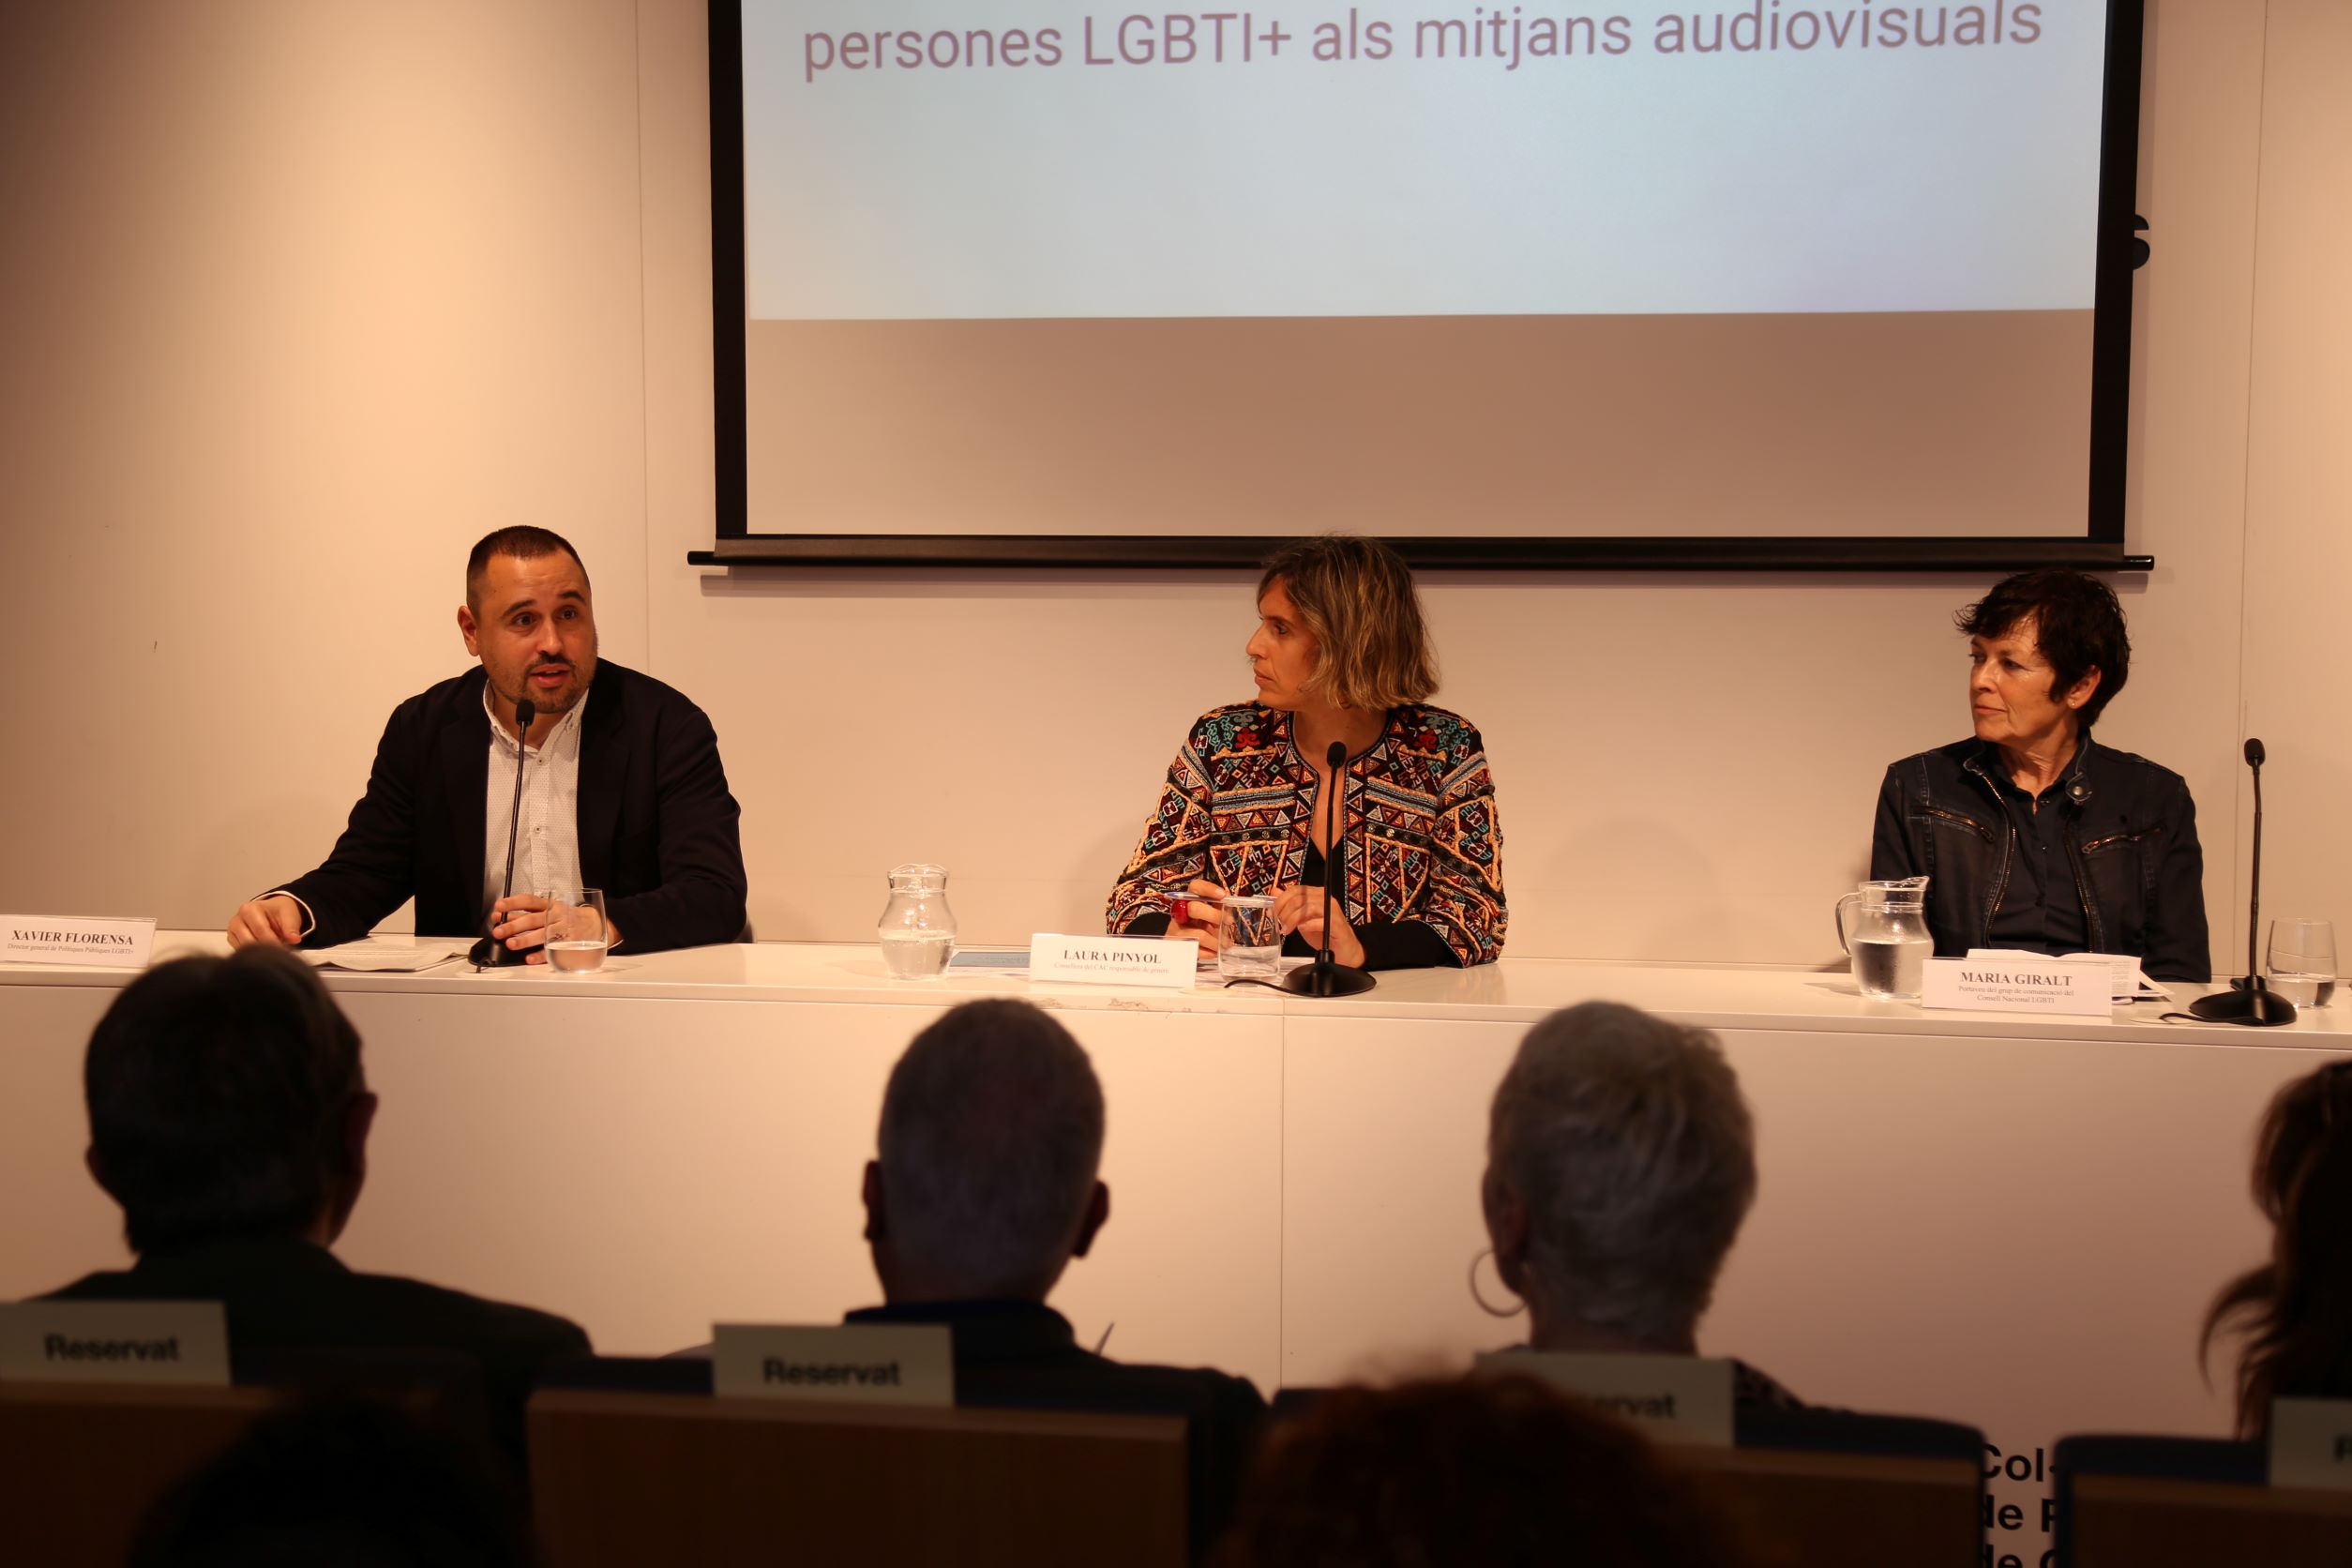 Recomanacions sobre el tractament de les persones LGBTI+ als mitjans audiovisuals